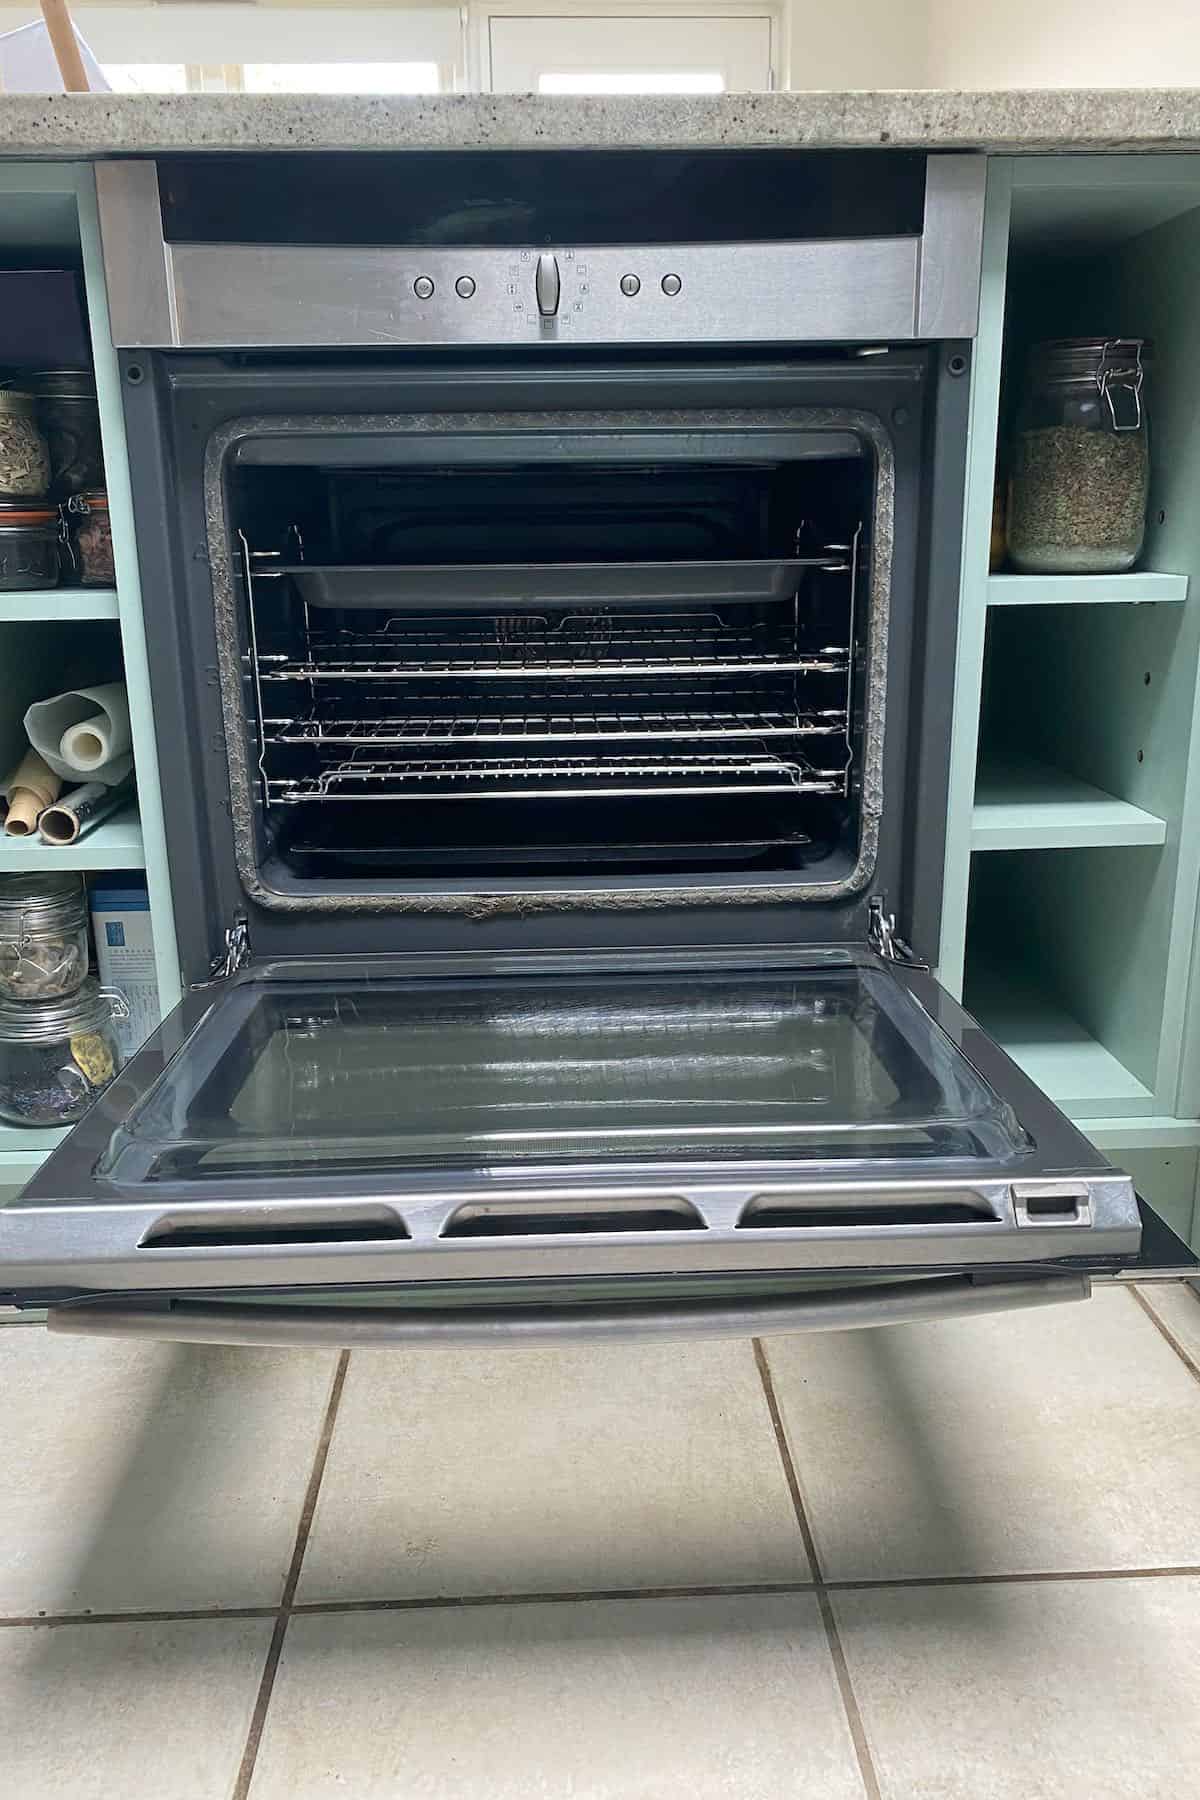 A clean oven with open door